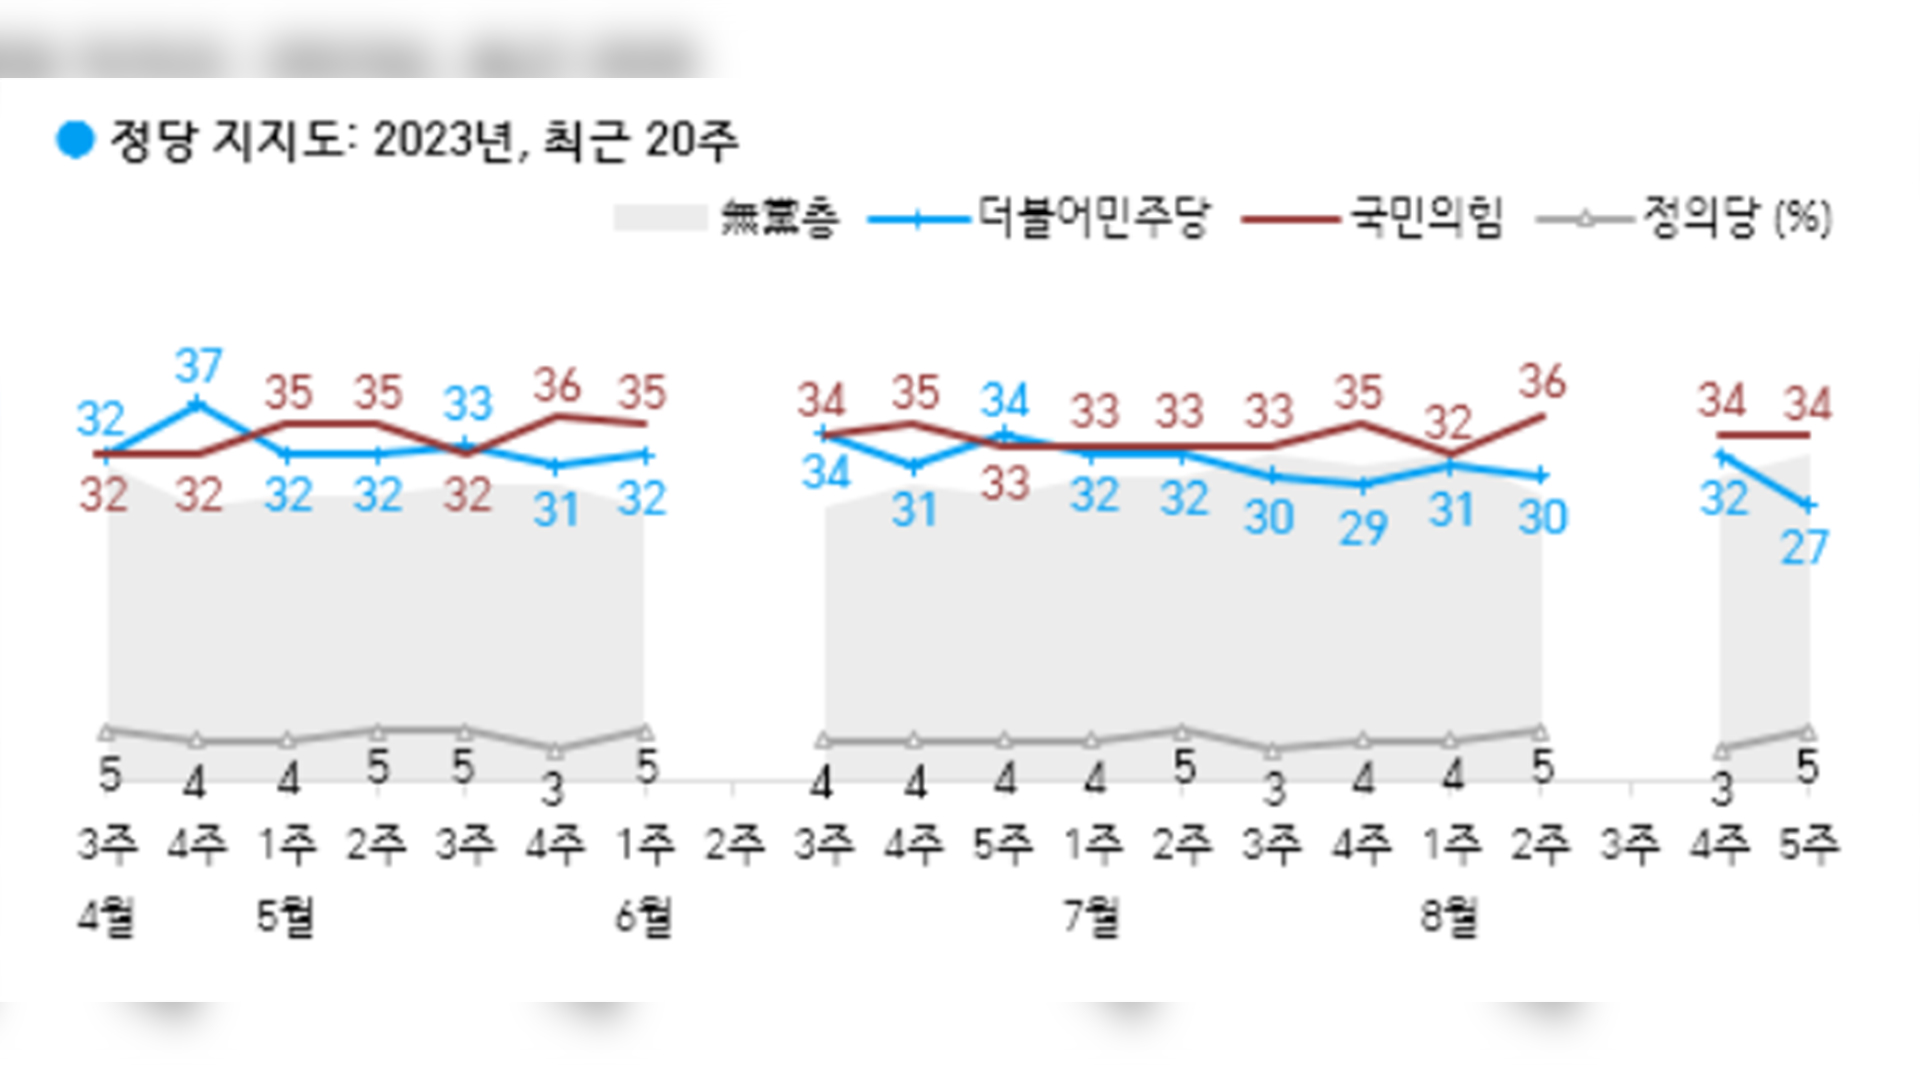 민주, 지지율 27% 현 정부 출범후 최저치.. 